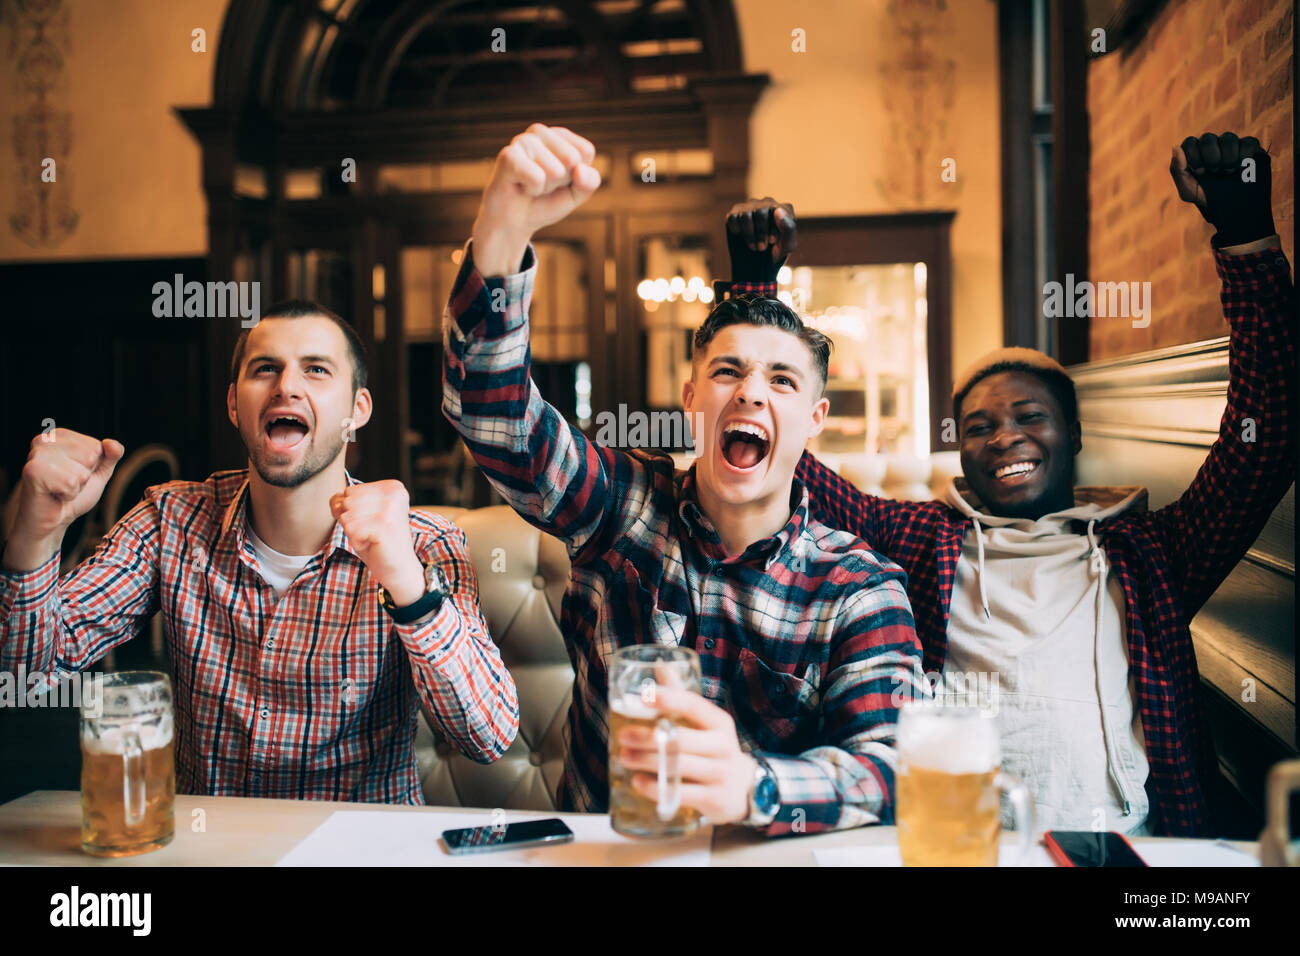 Gerne Fußball-Fans oder männlichen Freunden Bier trinken und feiern Sieg an der Bar oder pub Stockfoto